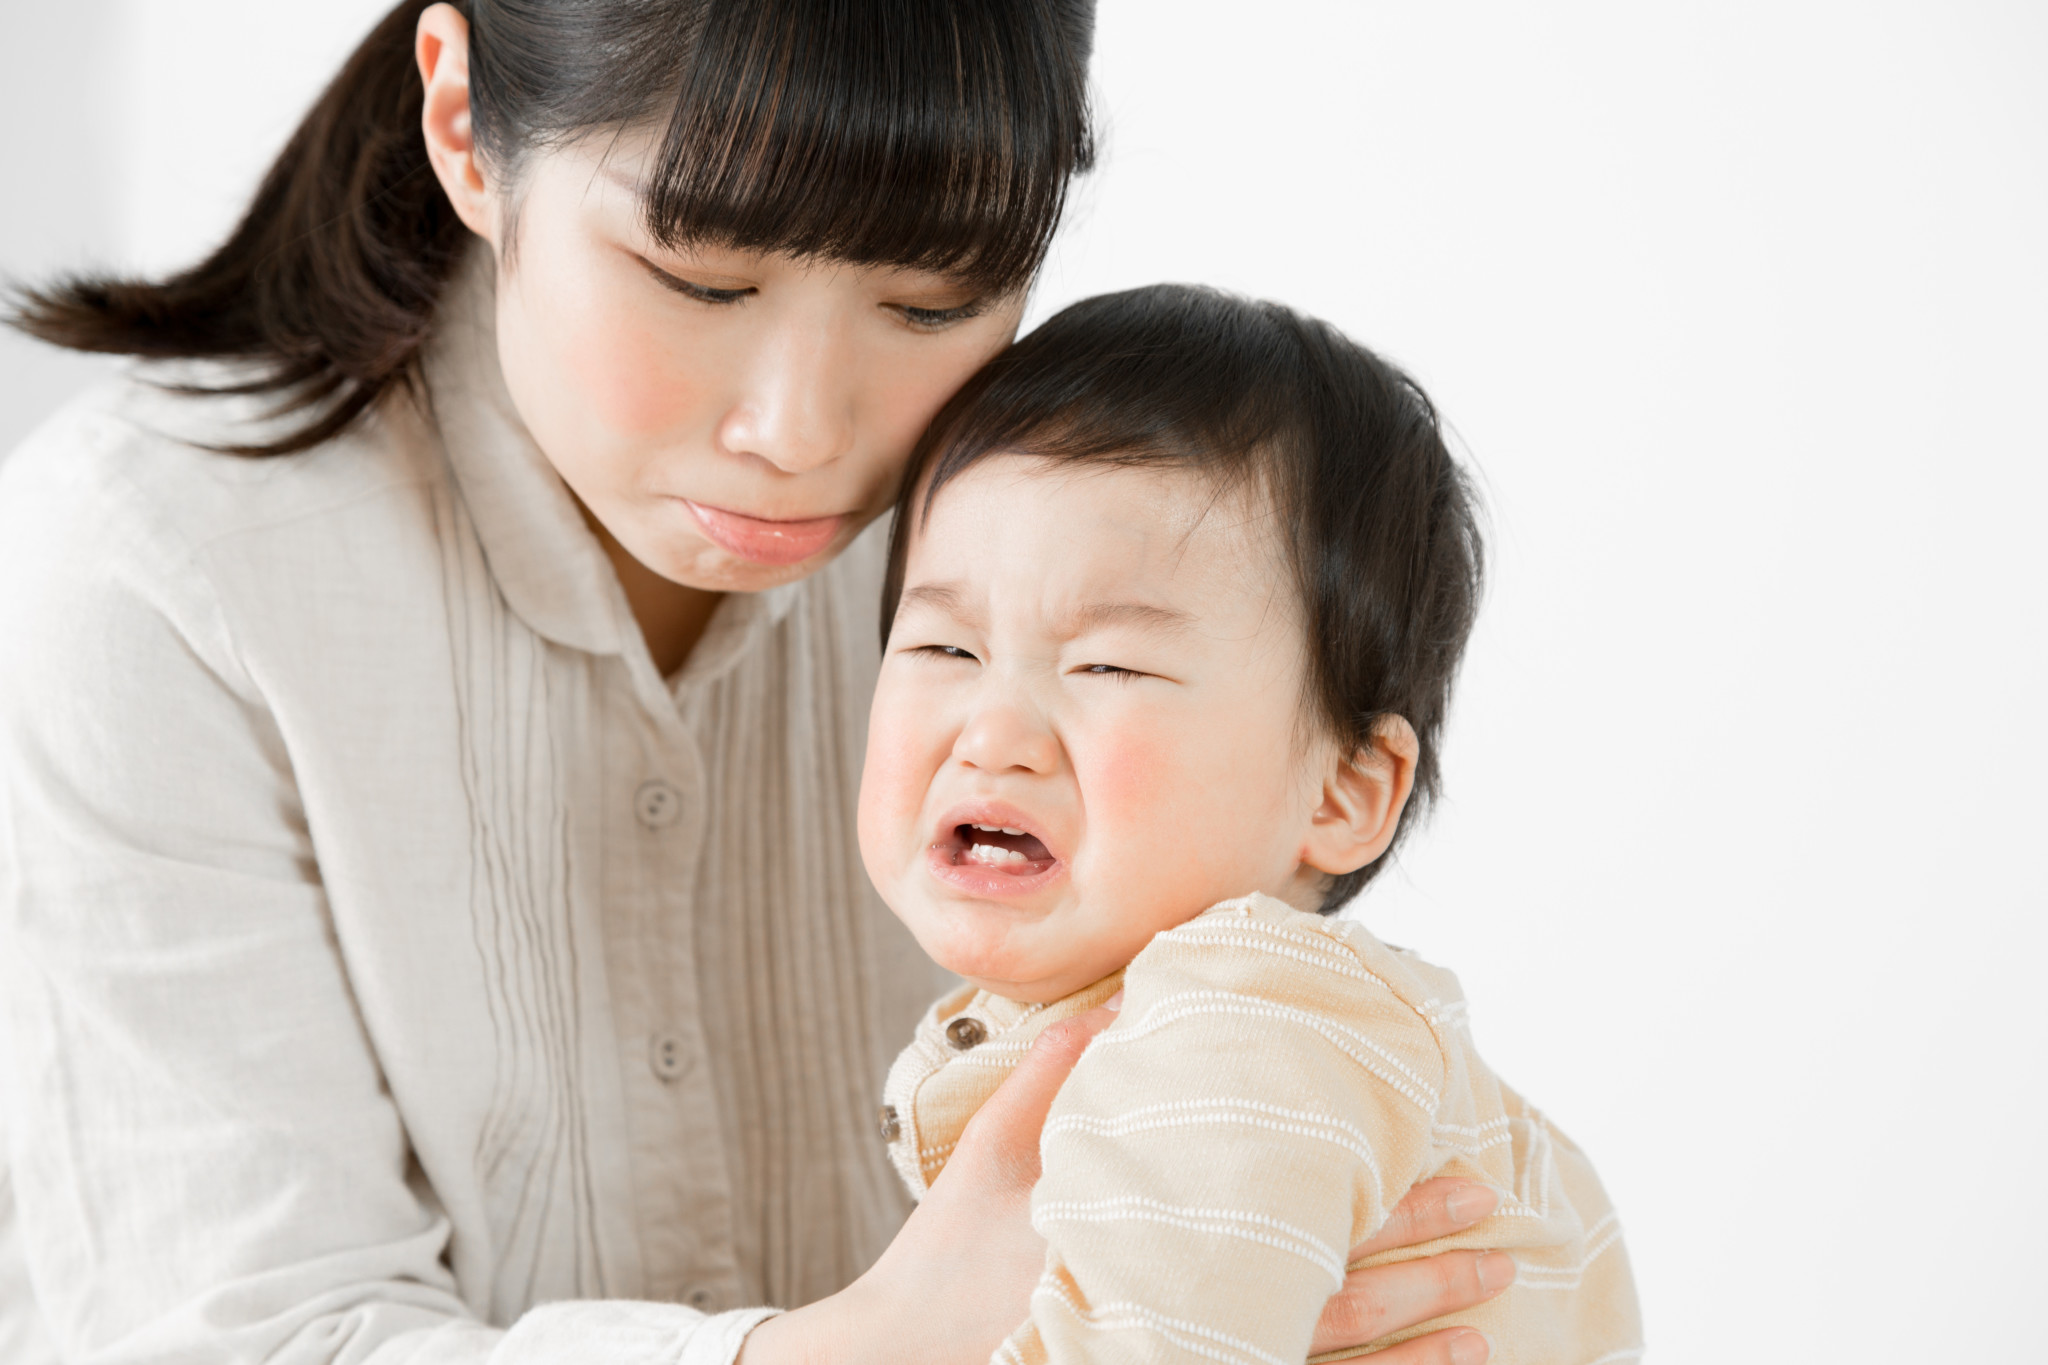 その大泣き 場所見知り かも 赤ちゃんの場所見知りの原因と対策 子育て Hanako ママ Web